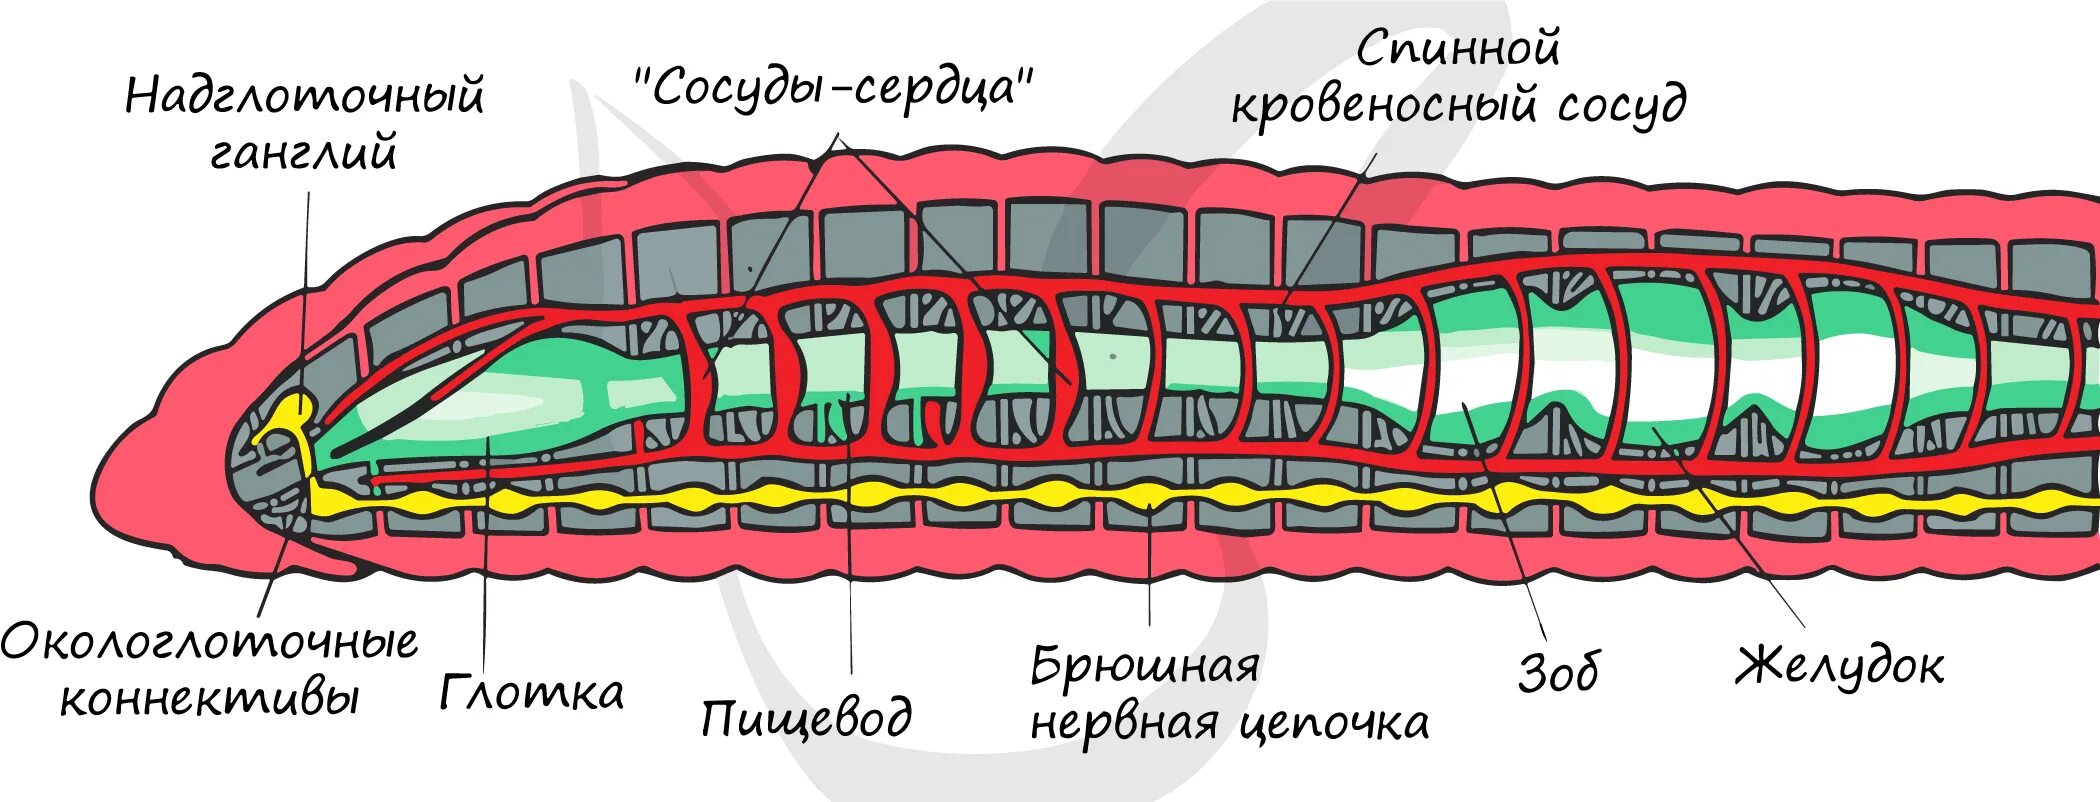 Тело дождевого червя имеет. Тип кольчатые черви строение тела. Внутреннее строение кольчатого червя рисунок. Кольчатые черви схема строения. Схема продольного разреза дождевого червя.